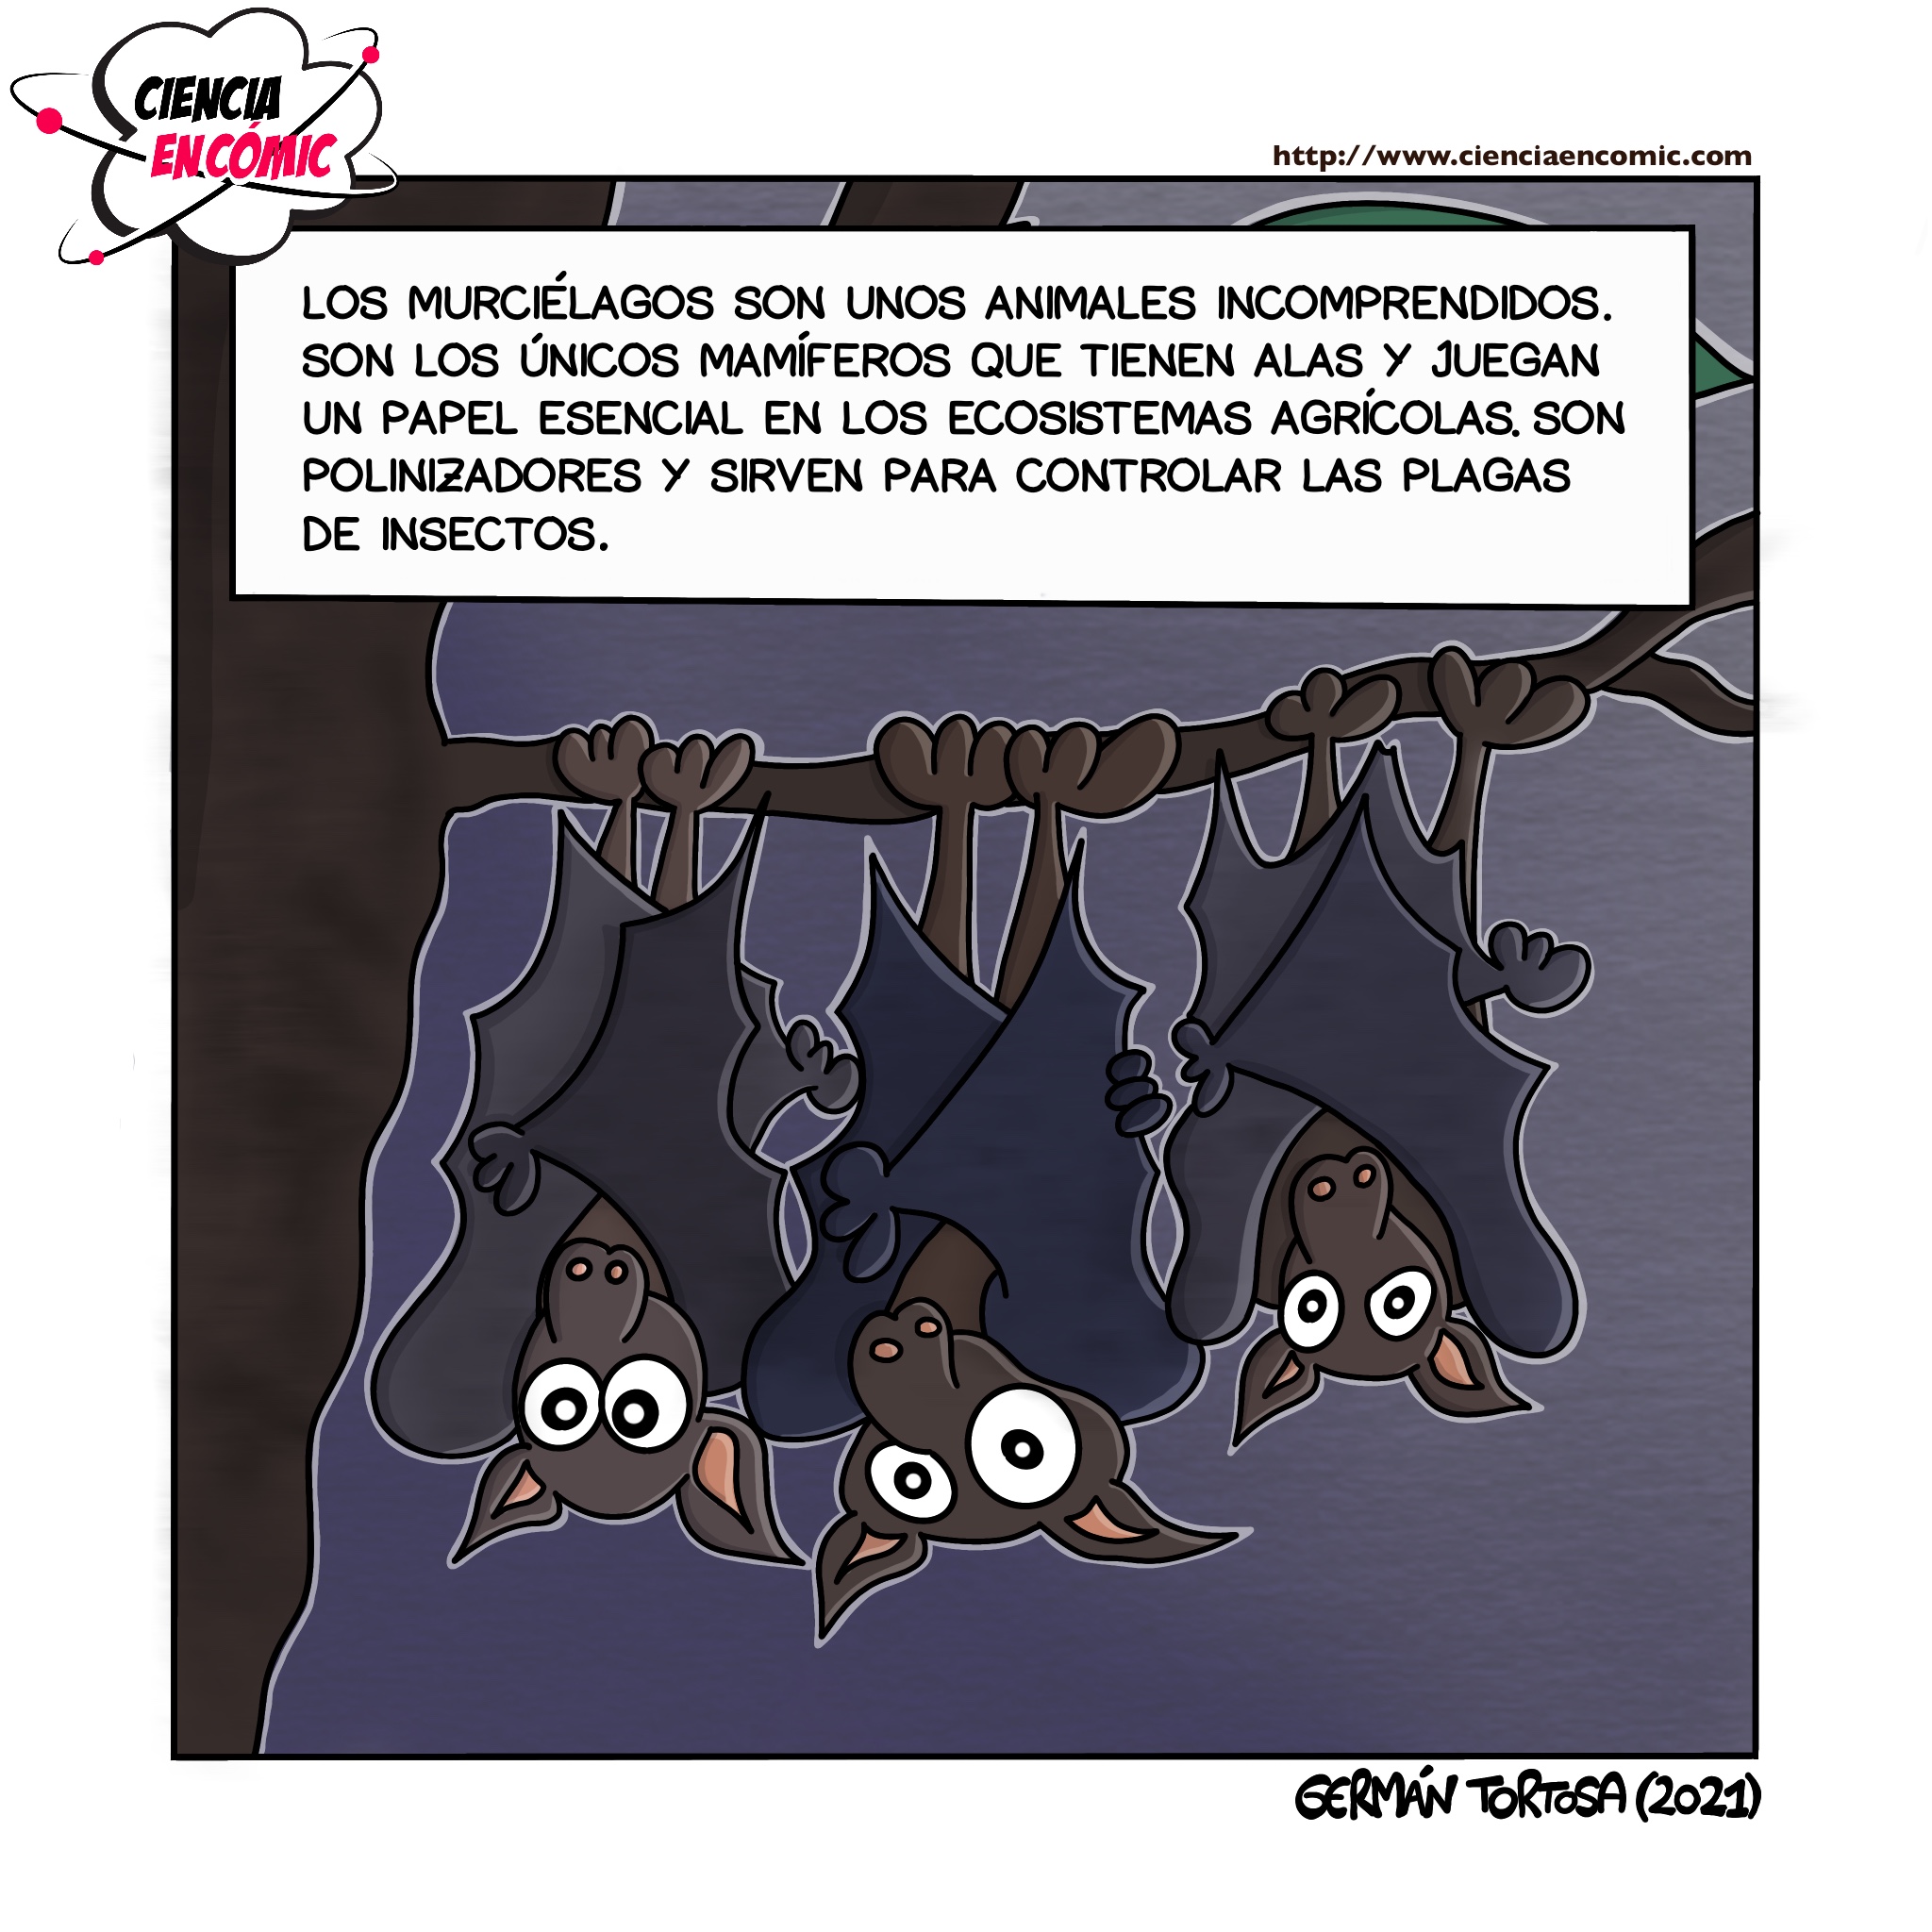 07) Microconceptos: Los murciélagos